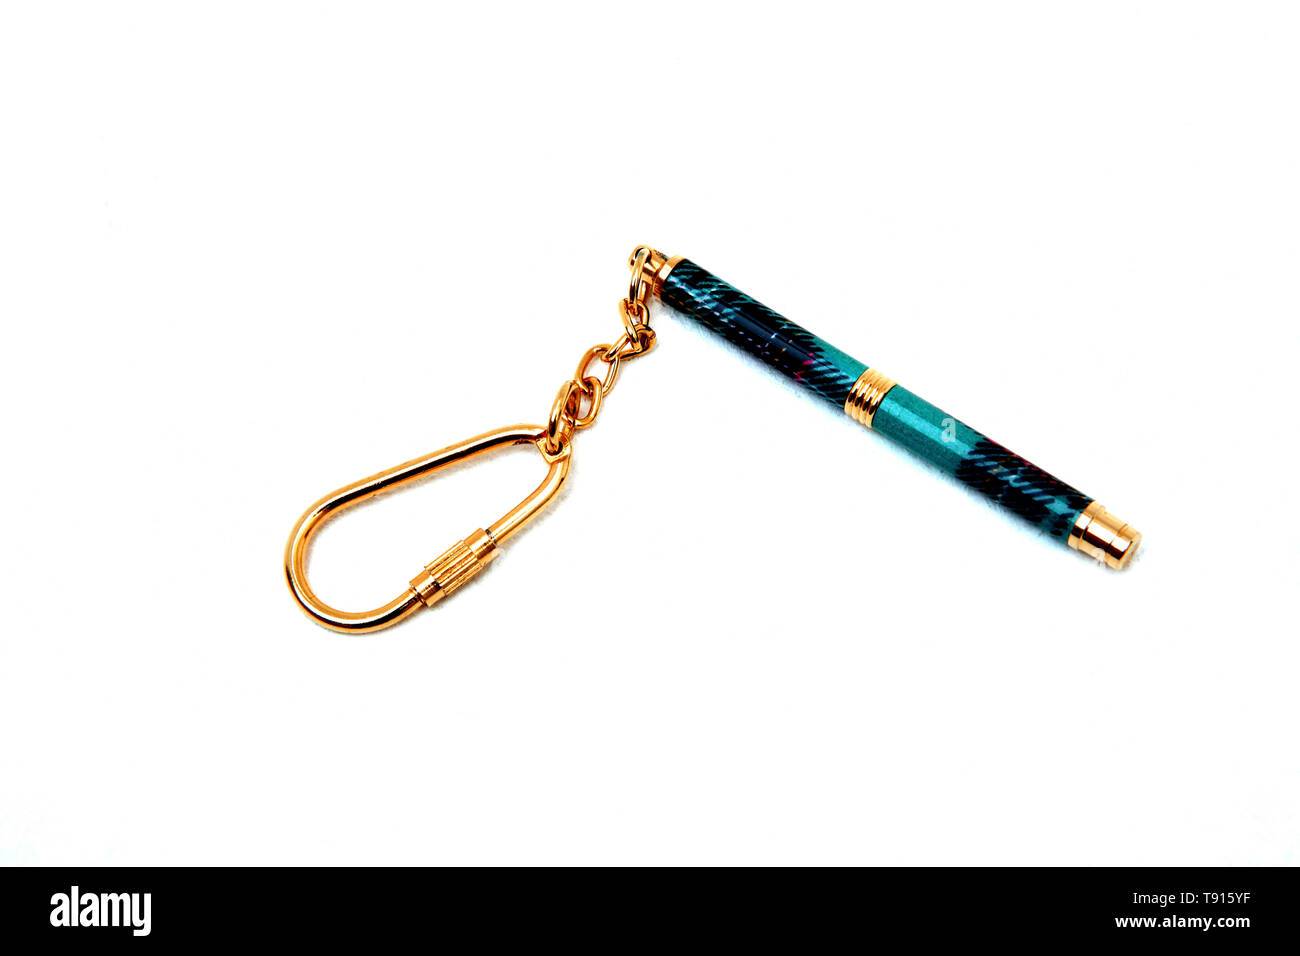 Miniature Tartan Pen on Keyring Stock Photo